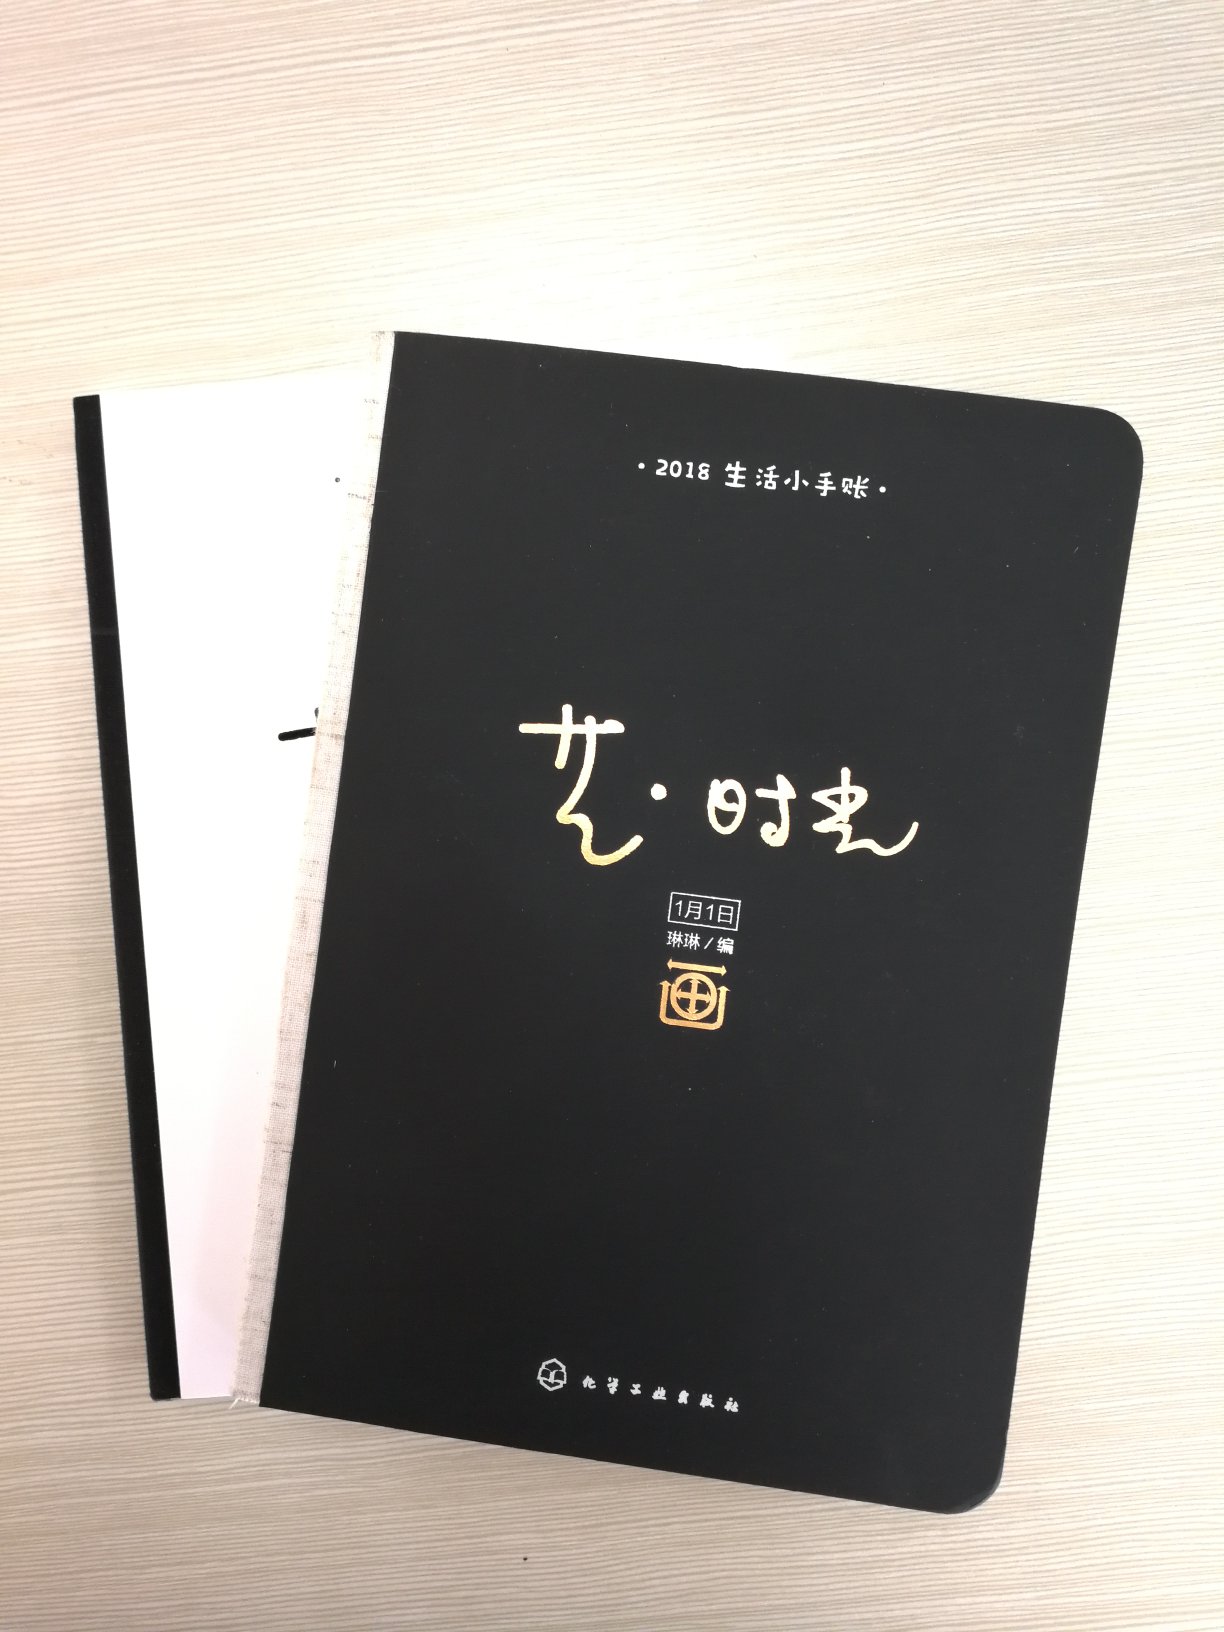 艺·时光 2018生活小手账 有每日艺术名画作品的笔记本。